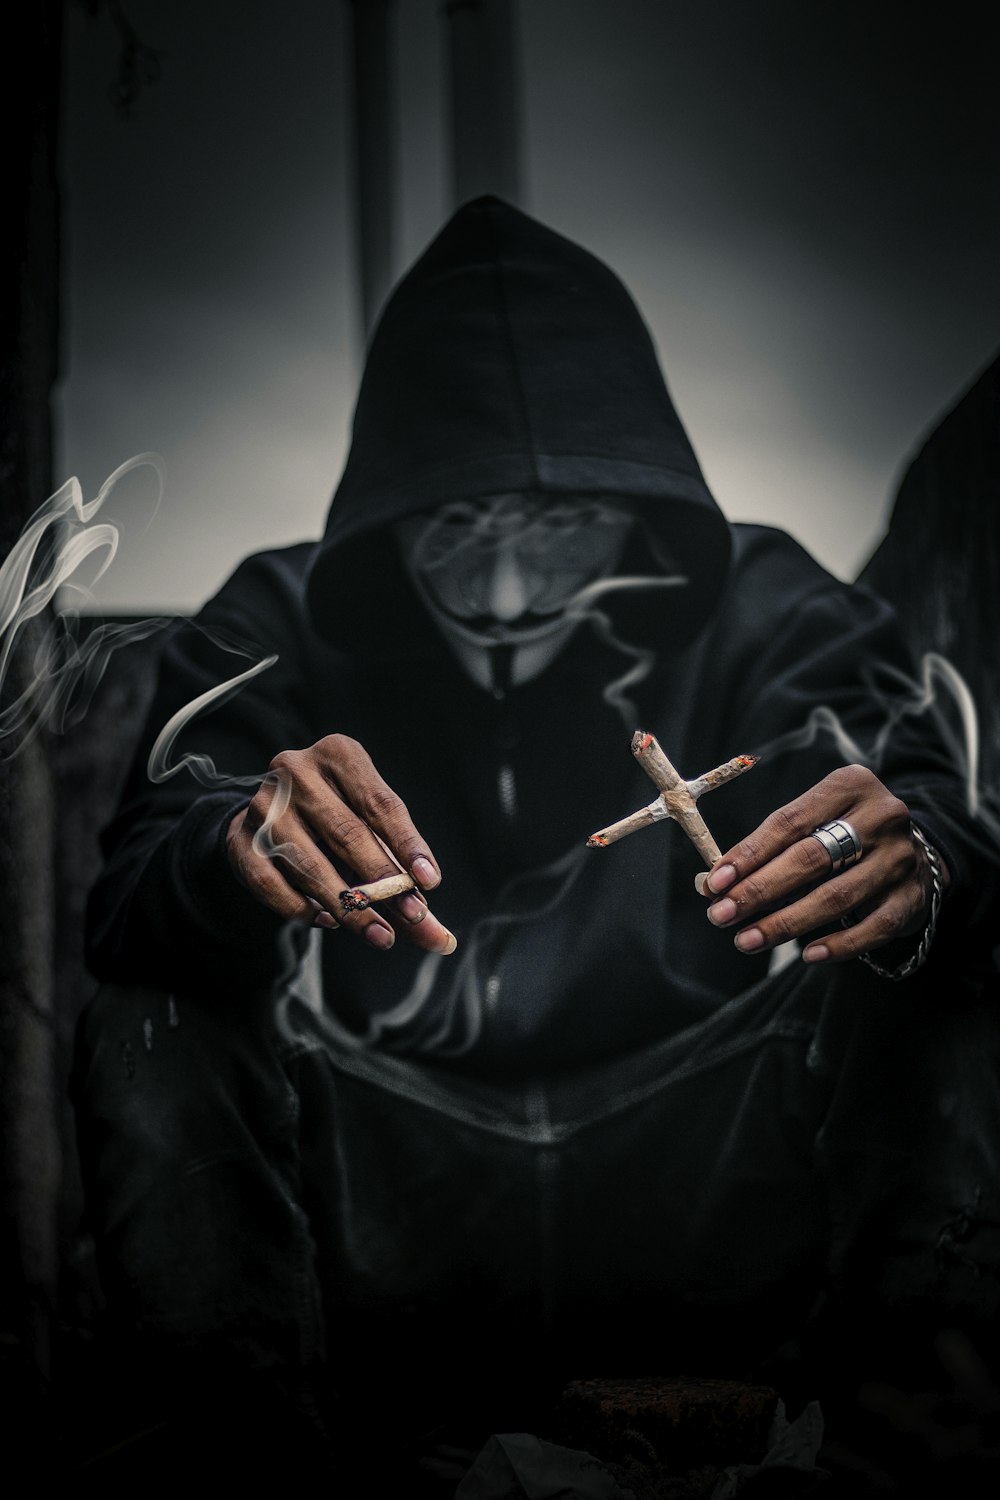 personne portant le masque de Guy Fawkes tenant des cigarettes allumées en forme de croix sur sa gauche avec une joice allumée sur la main droite